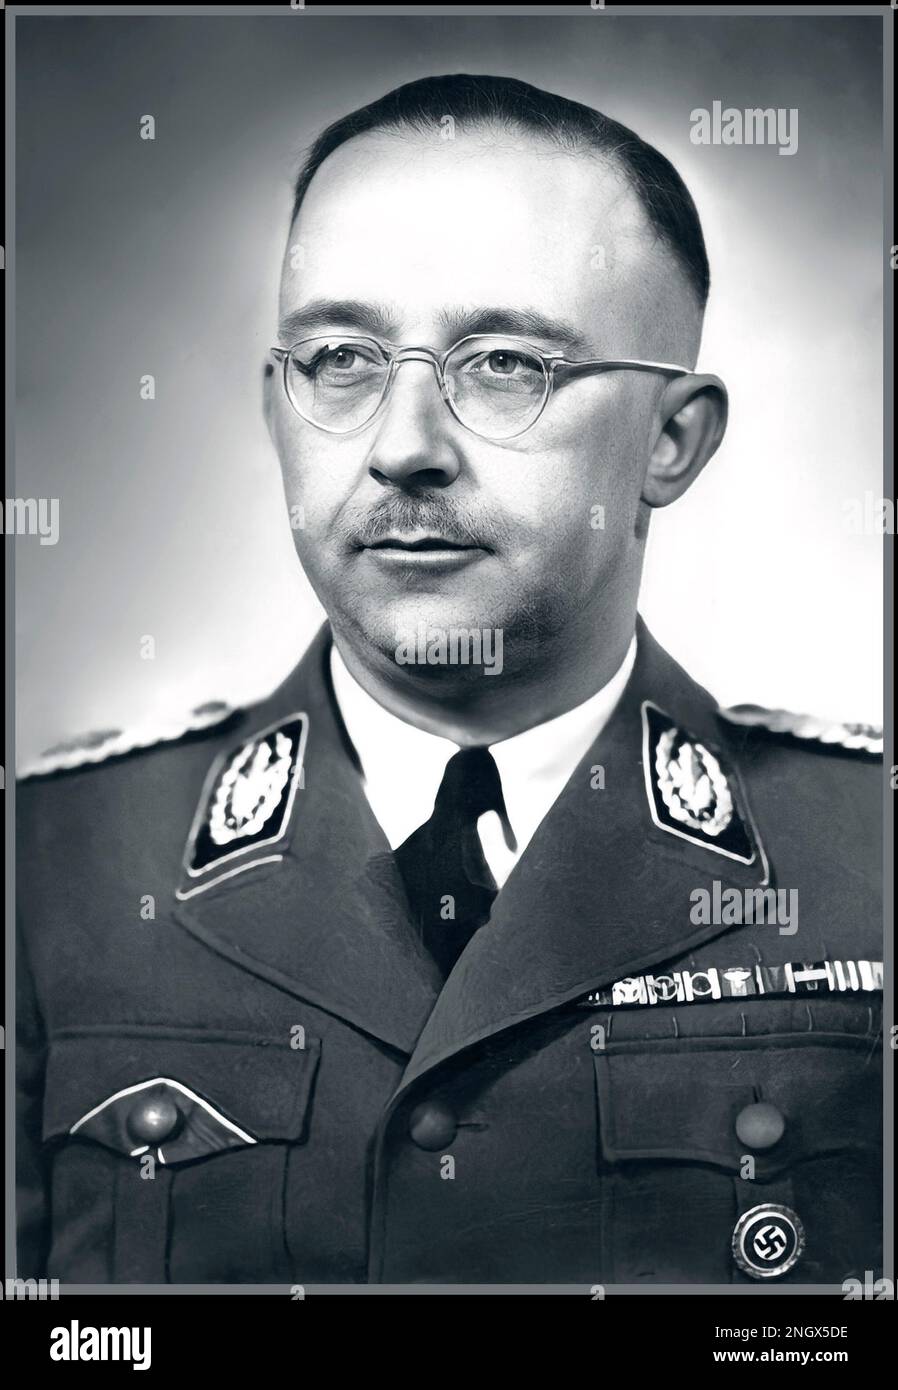 HIMMLER NAZI Heinrich Luitpold Himmler WW2 Nazi. Était Reichsführer du Schutzstaffel, et un membre principal du Parti nazi d'Allemagne. Himmler était l'un des hommes les plus puissants de l'Allemagne nazie et le principal architecte de l'Holocauste. Date 1942 il s'est suicidé avant d'être jugé pour crimes contre l'humanité. Banque D'Images